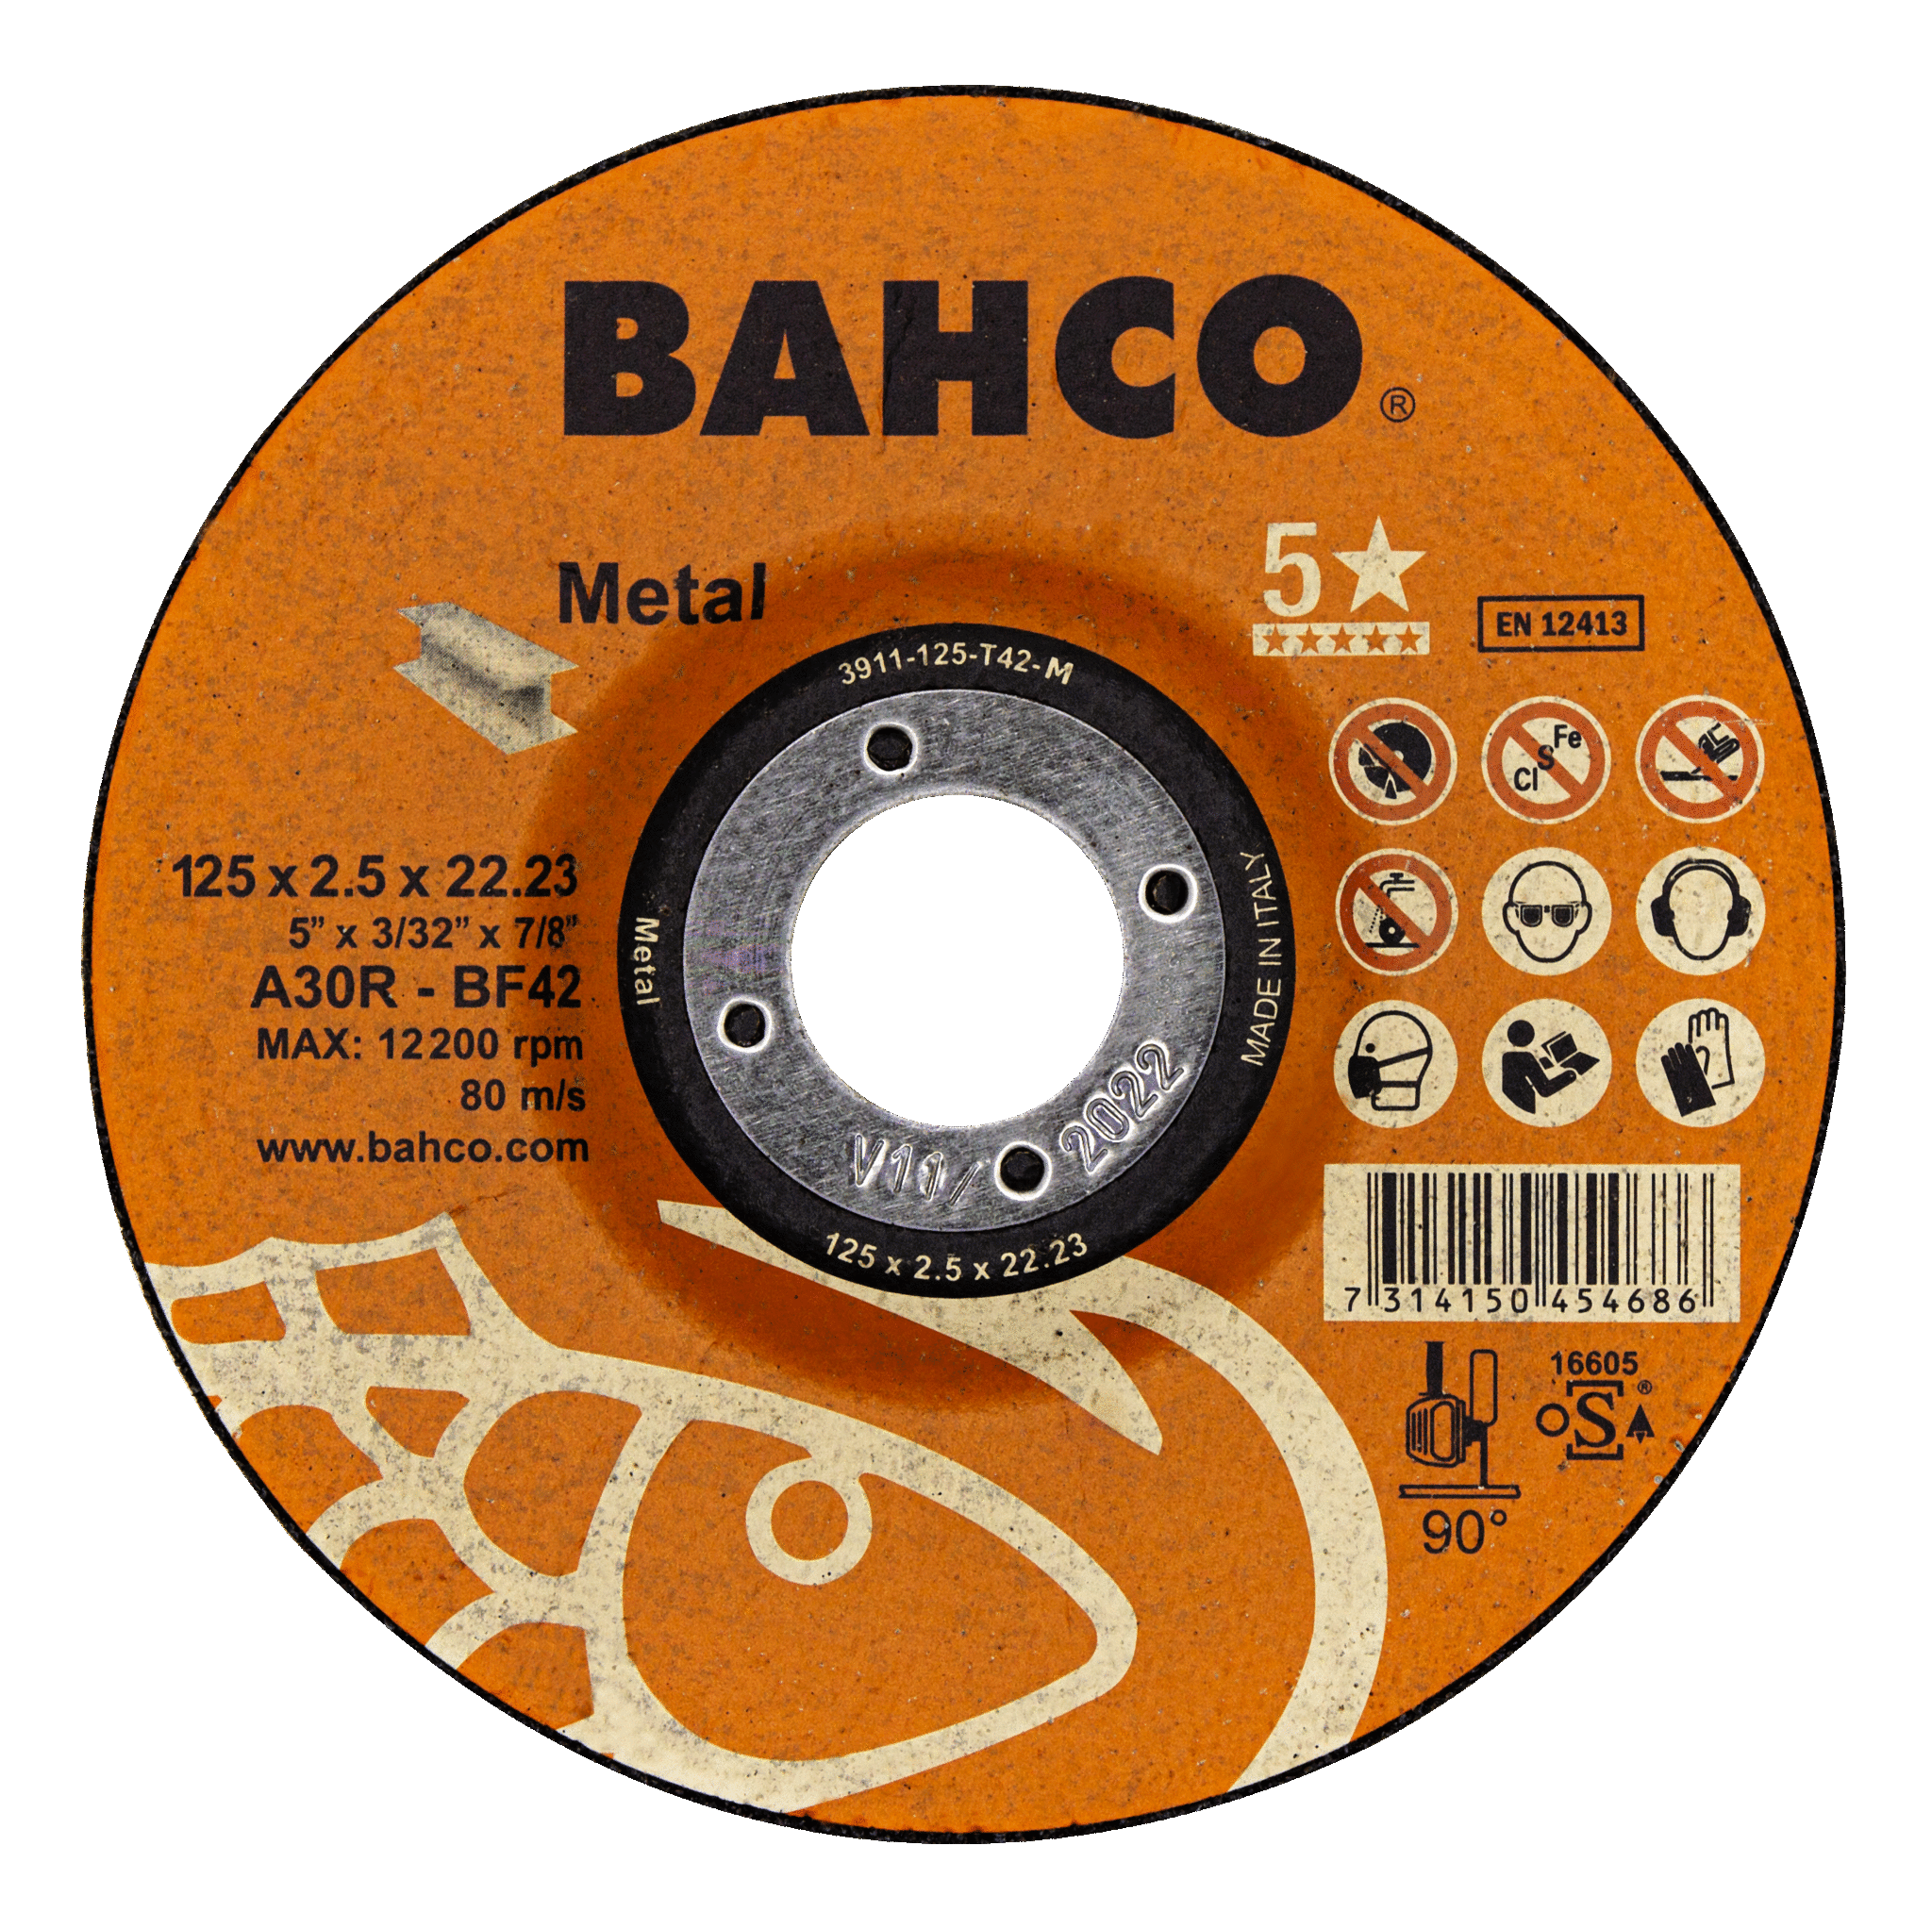 Высокопроизводительные дисковые пилы для металла 115 x 2.5 x 22.23mm BAHCO 3911-115-T42-M